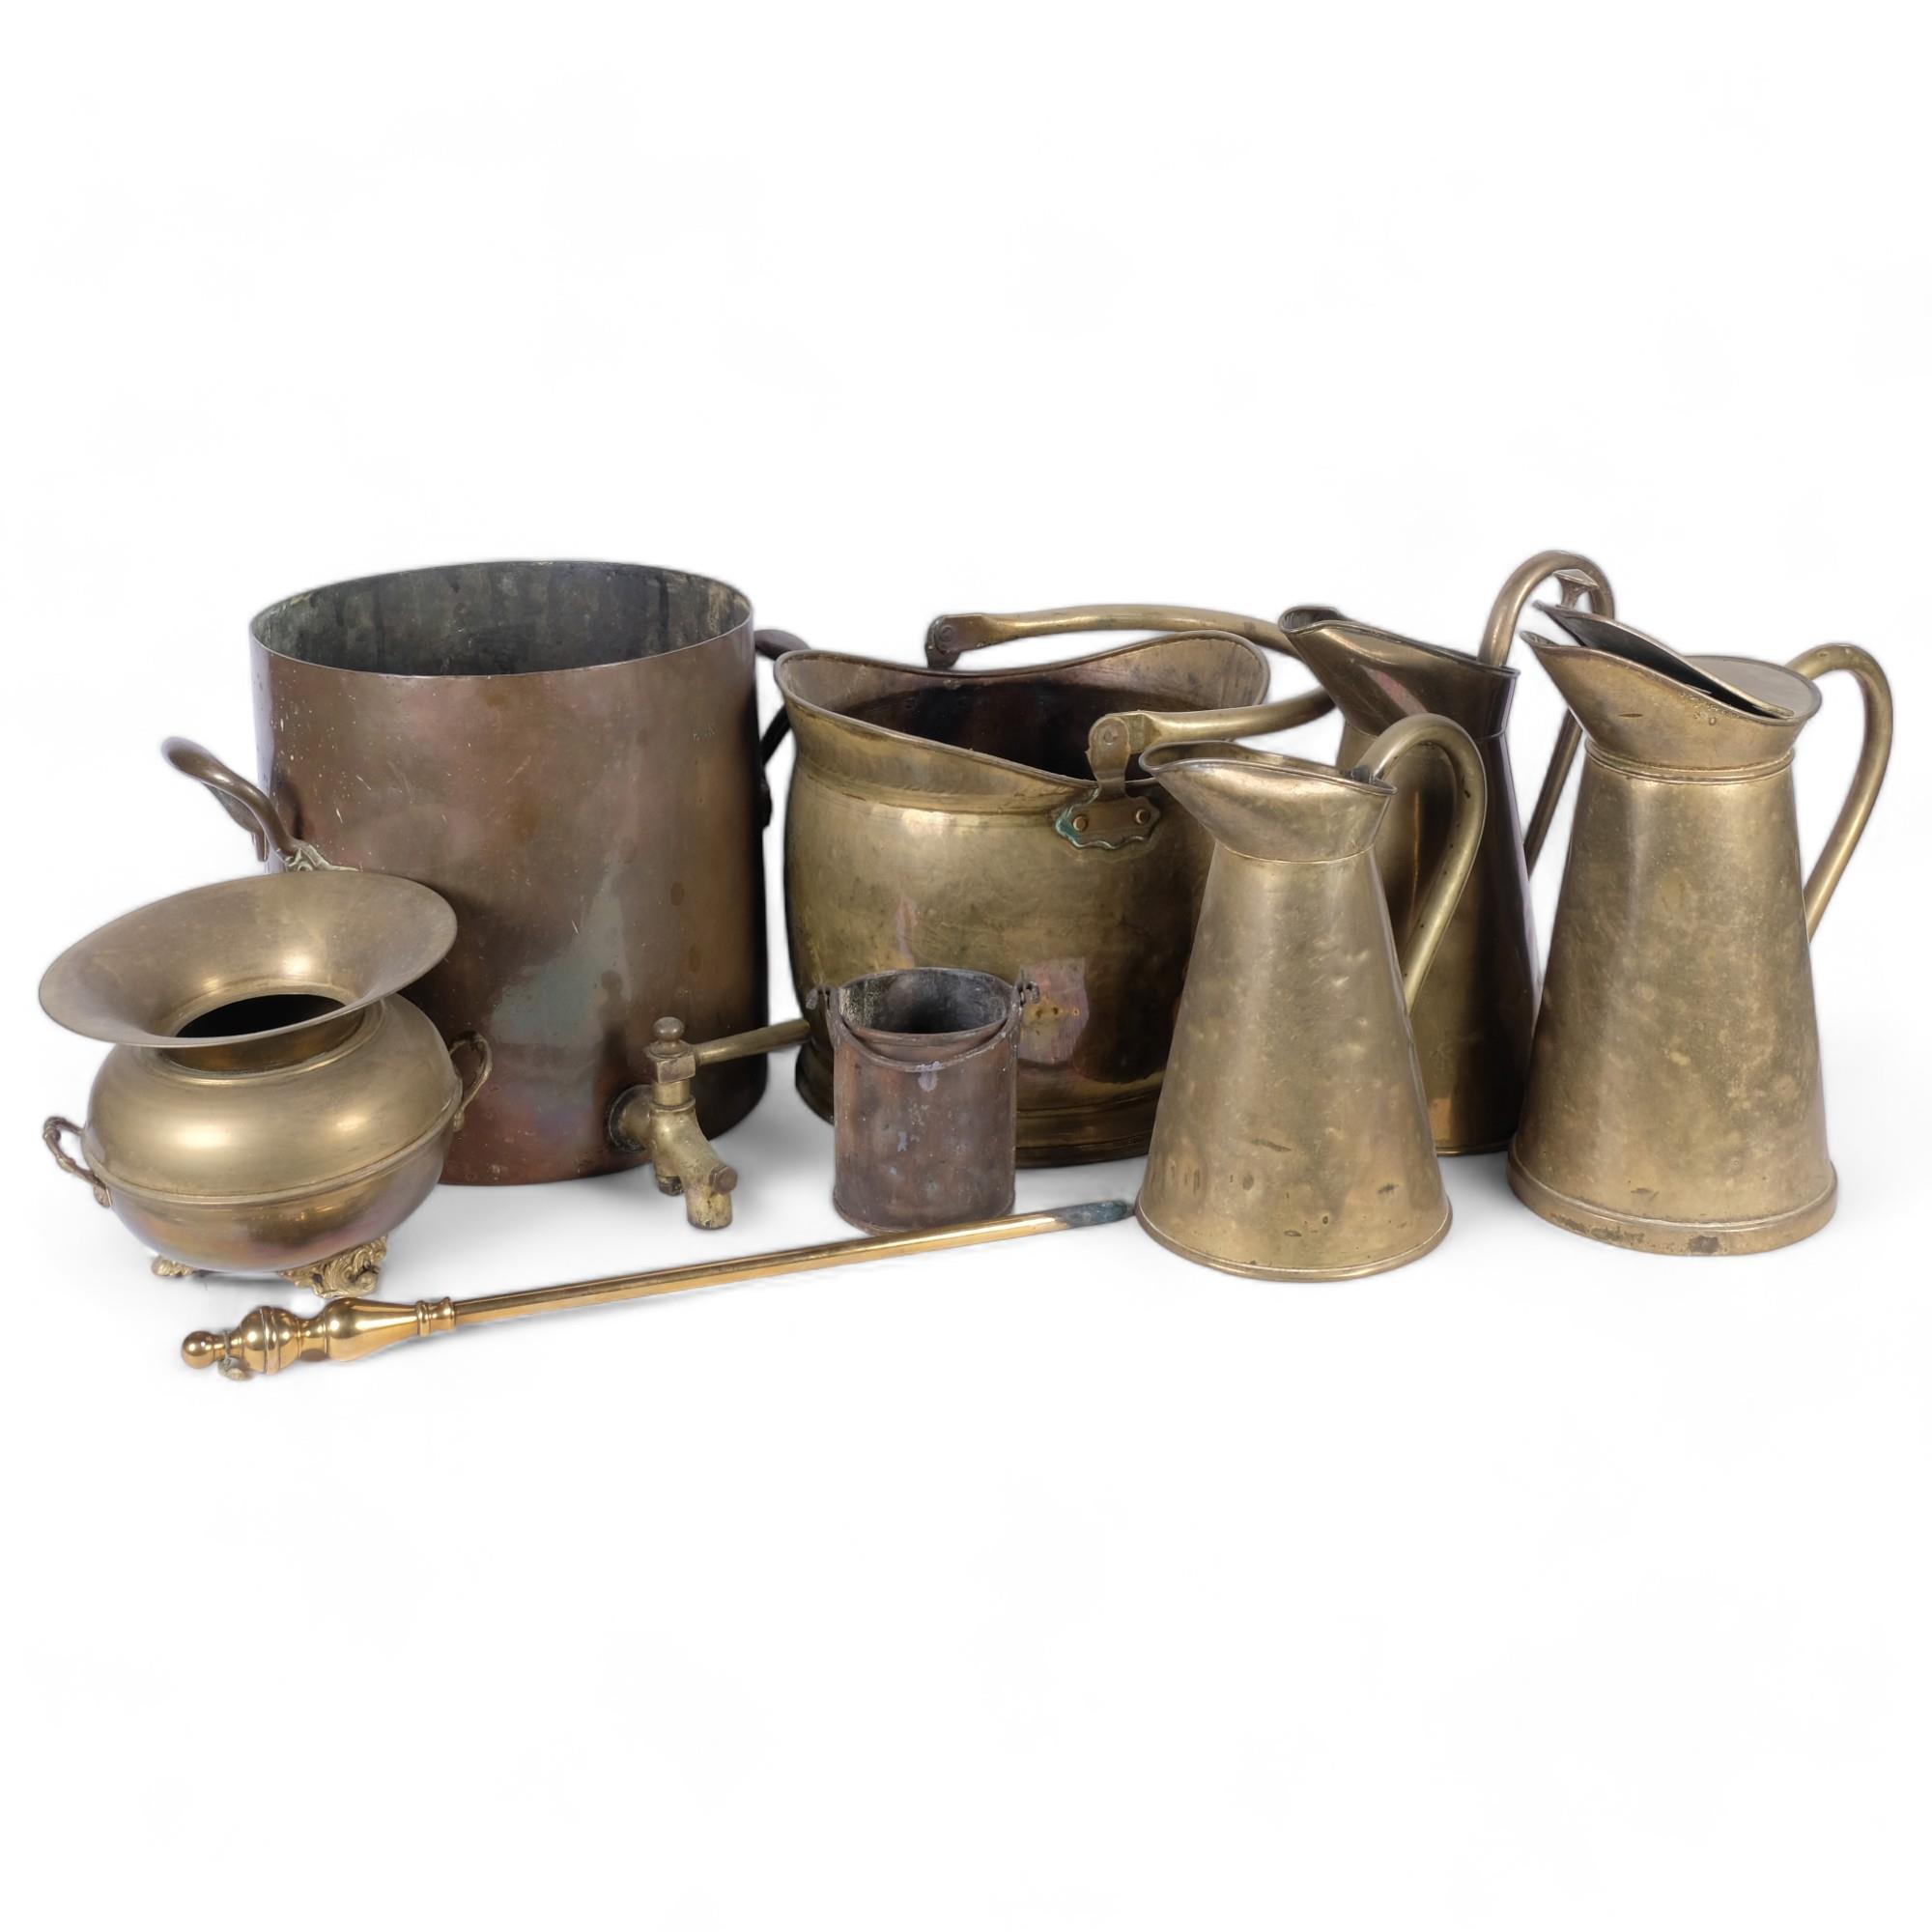 Vintage brass jugs, a spittoon, a brass tea urn, coal bucket, etc